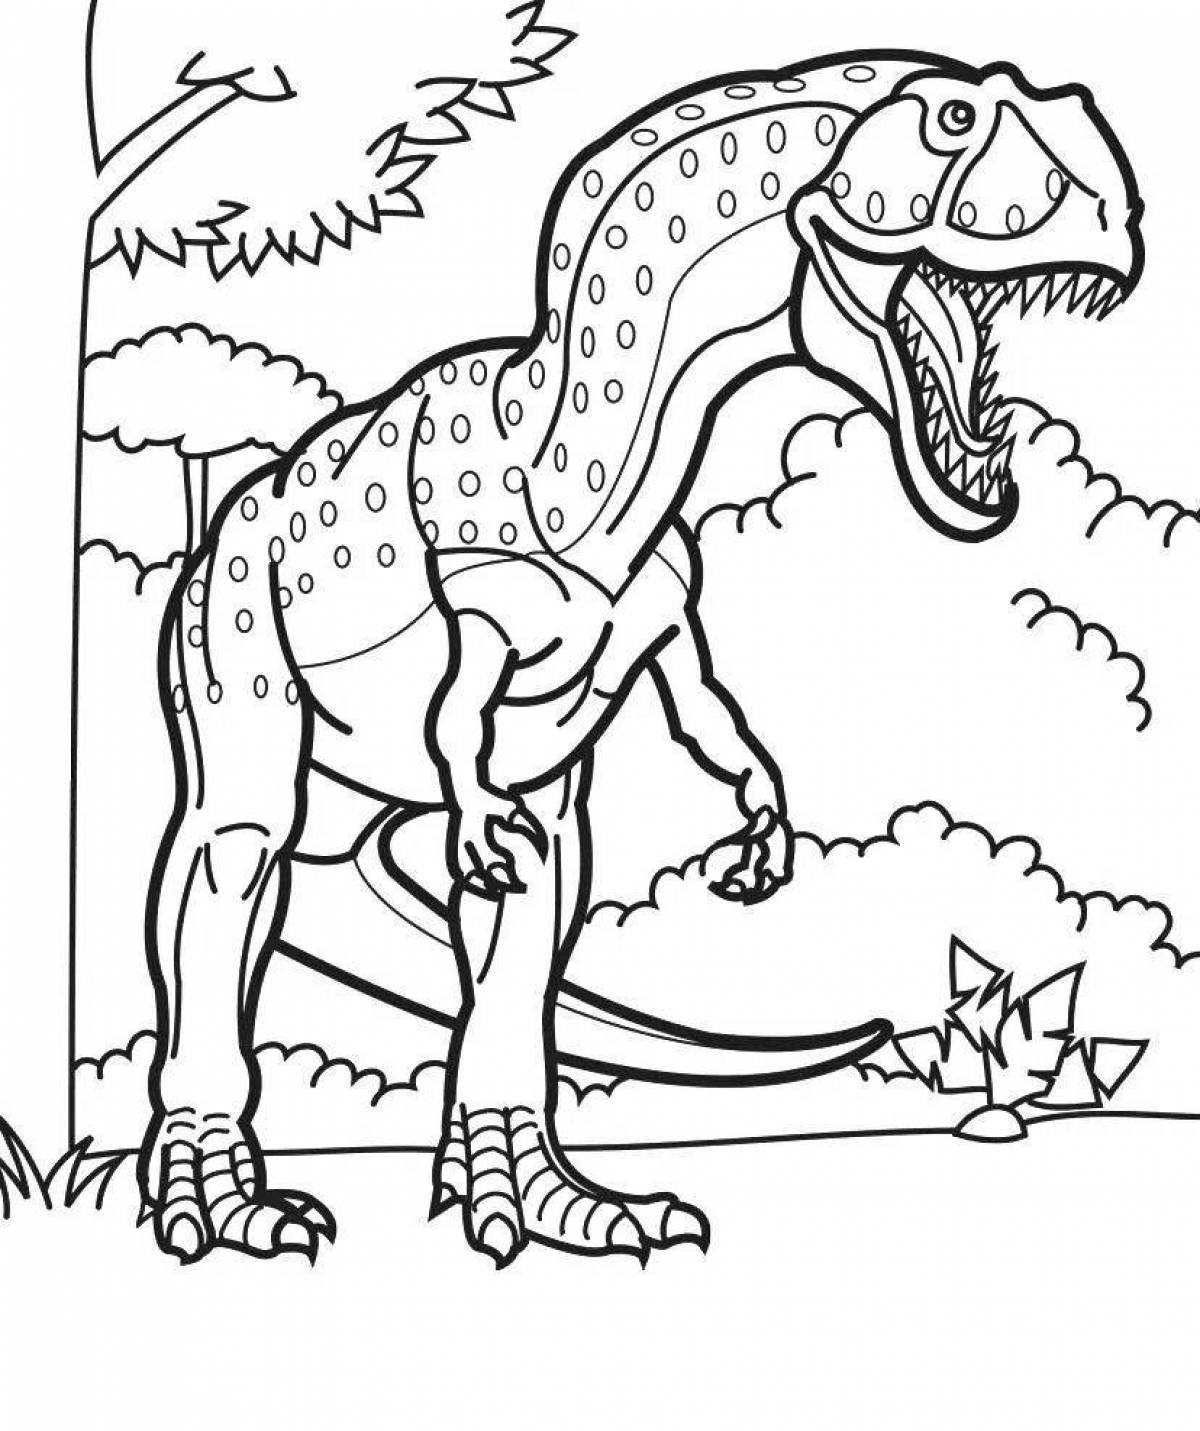 Сказочная страница раскраски с принтом динозавра